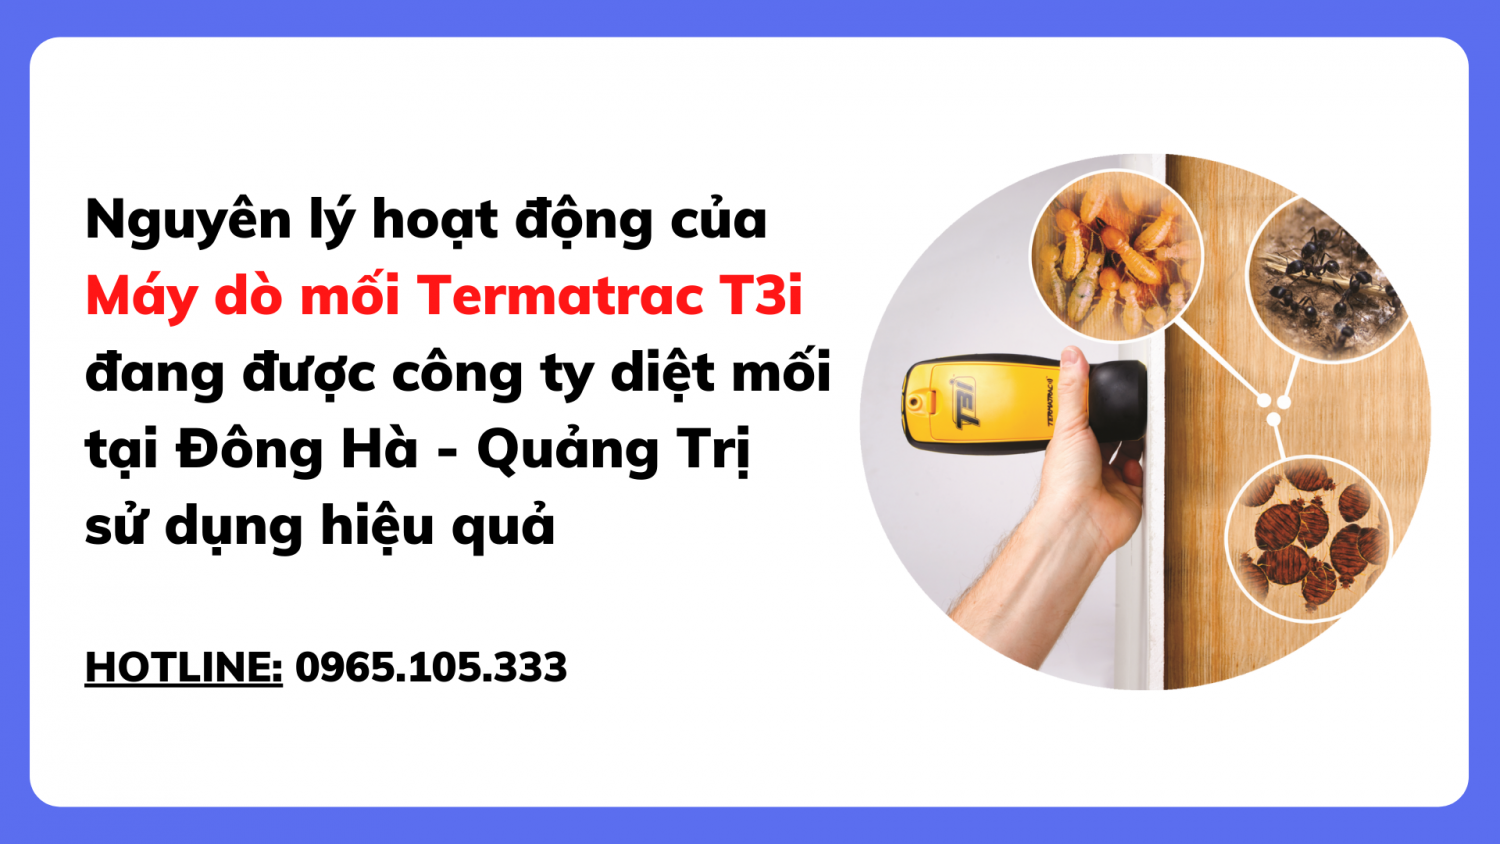 Nguyên lý hoạt động của máy dò mối Termatrac T3i đang được công ty diệt mối tại Đông Hà - Quảng Trị sử dụng hiệu quả